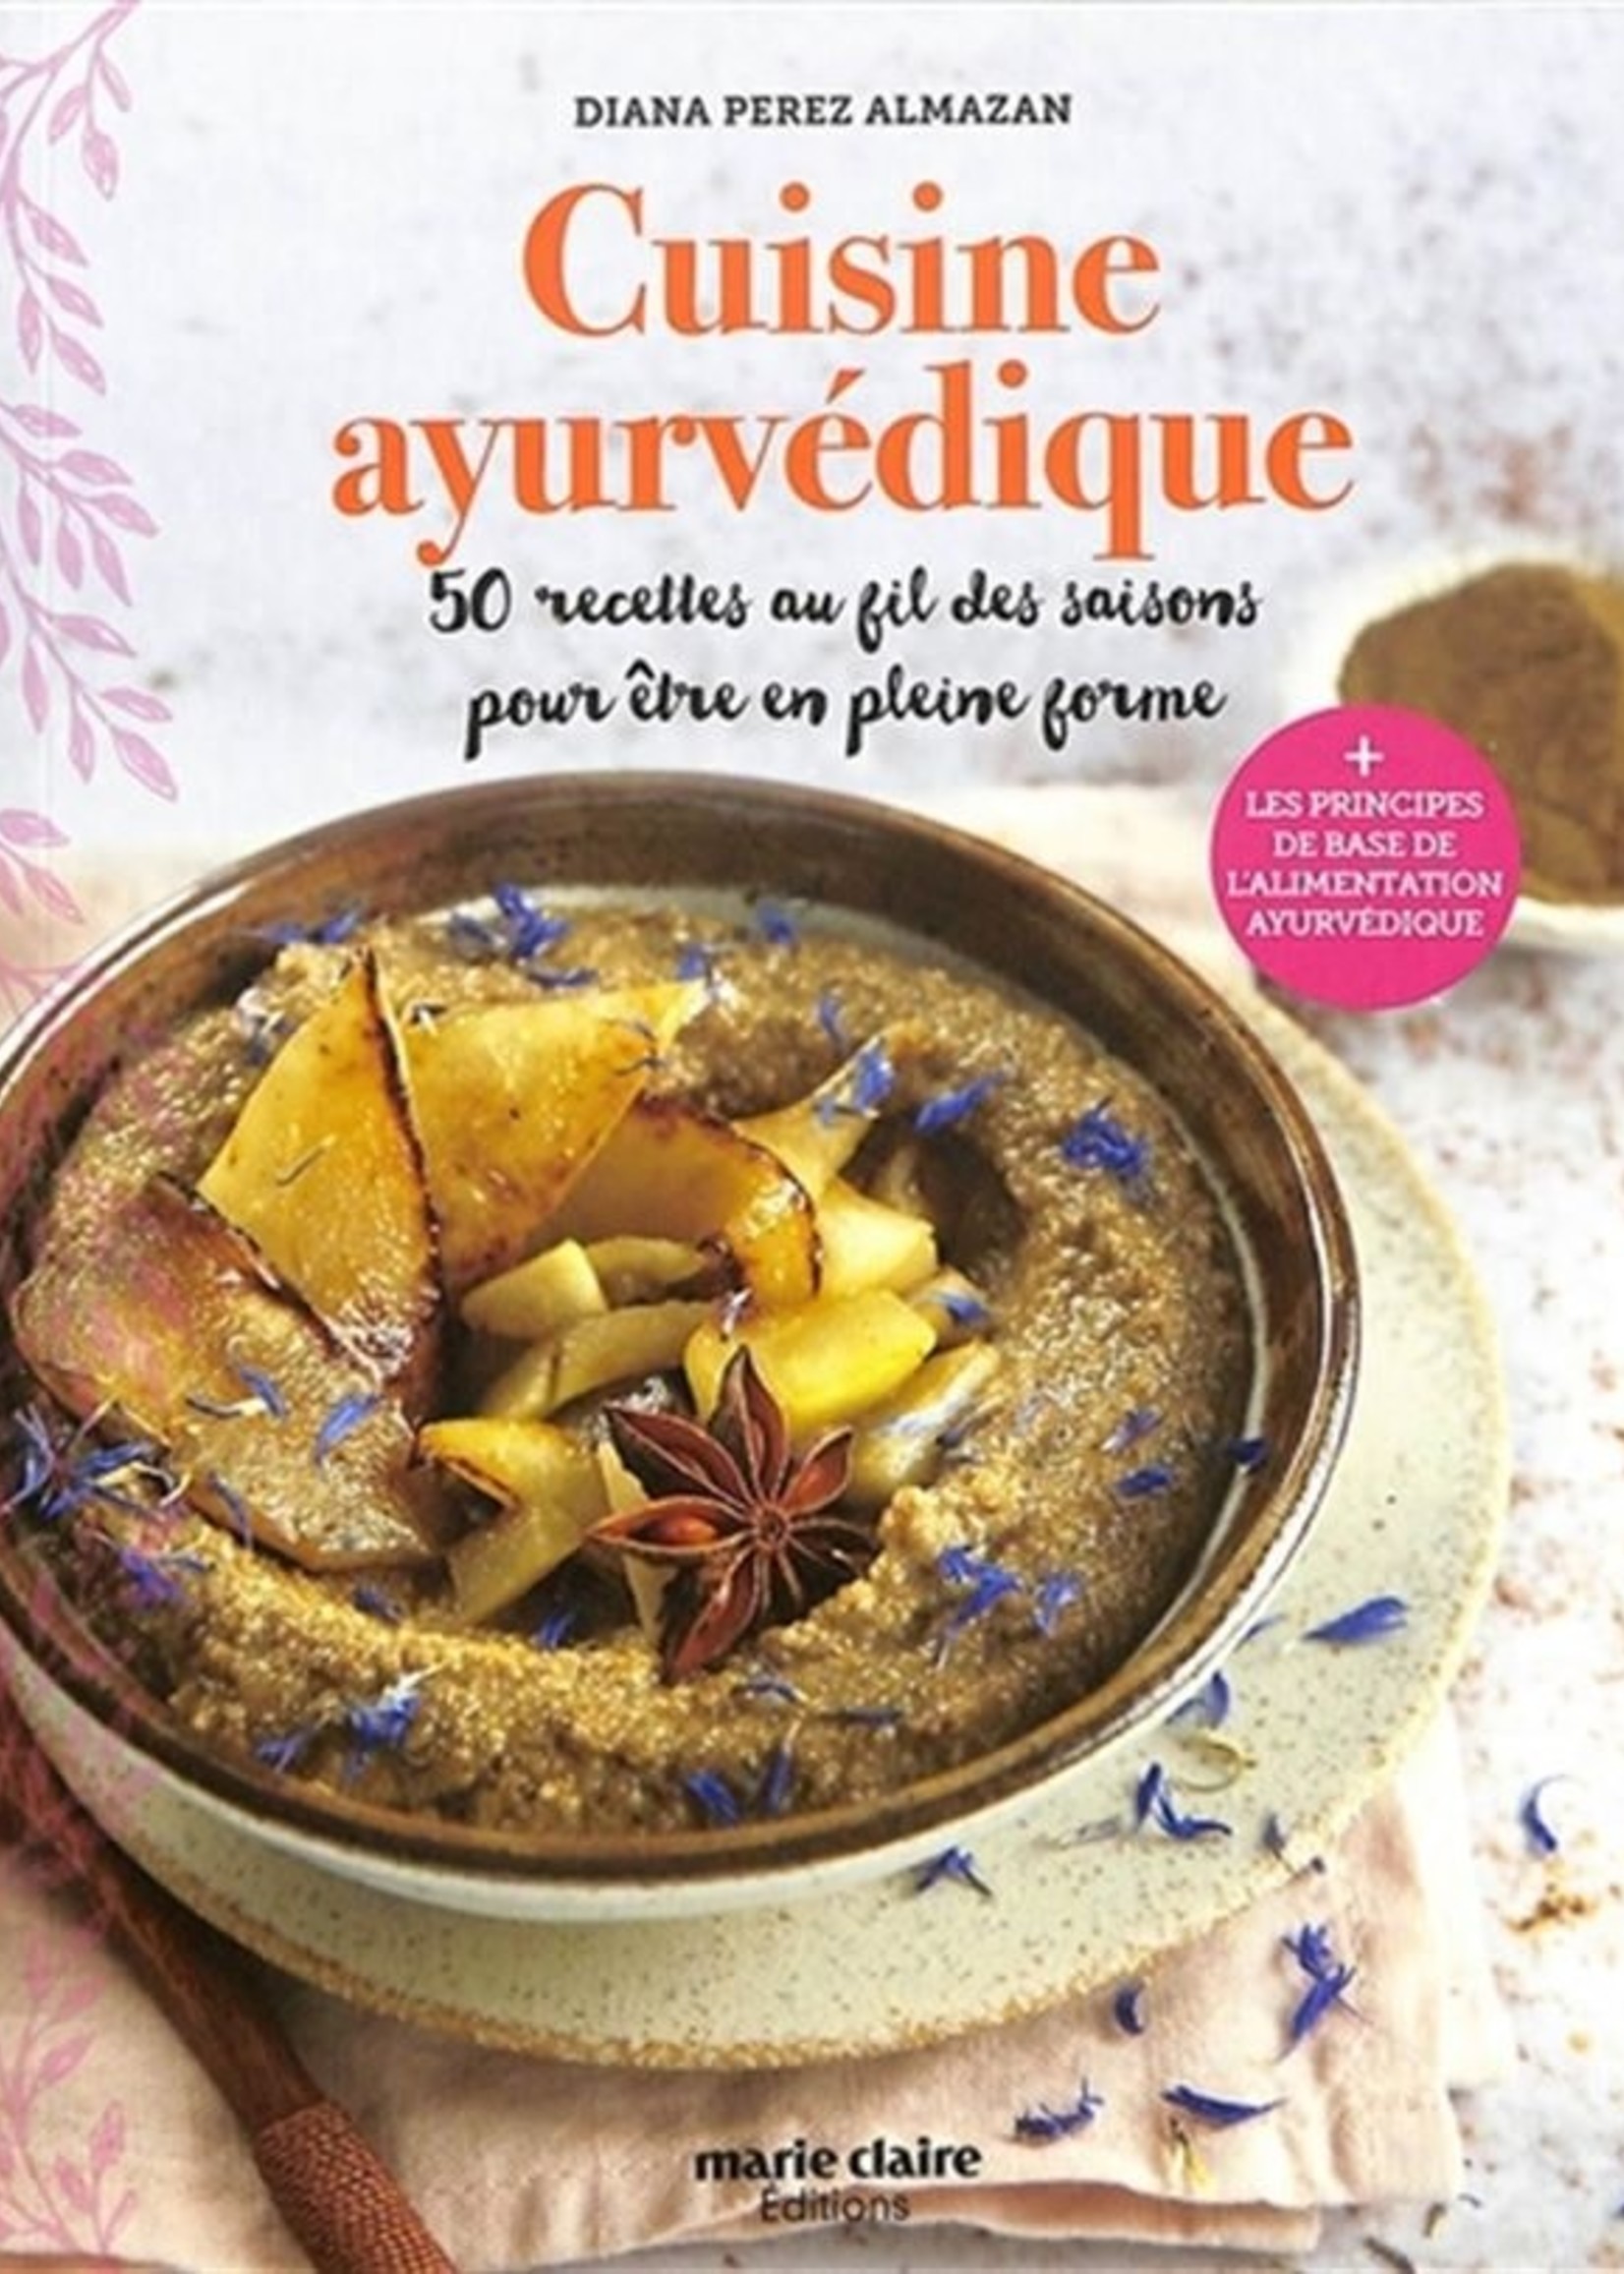 Éditions Marie Claire Cuisine ayurvédique - Diana Perez Almazan